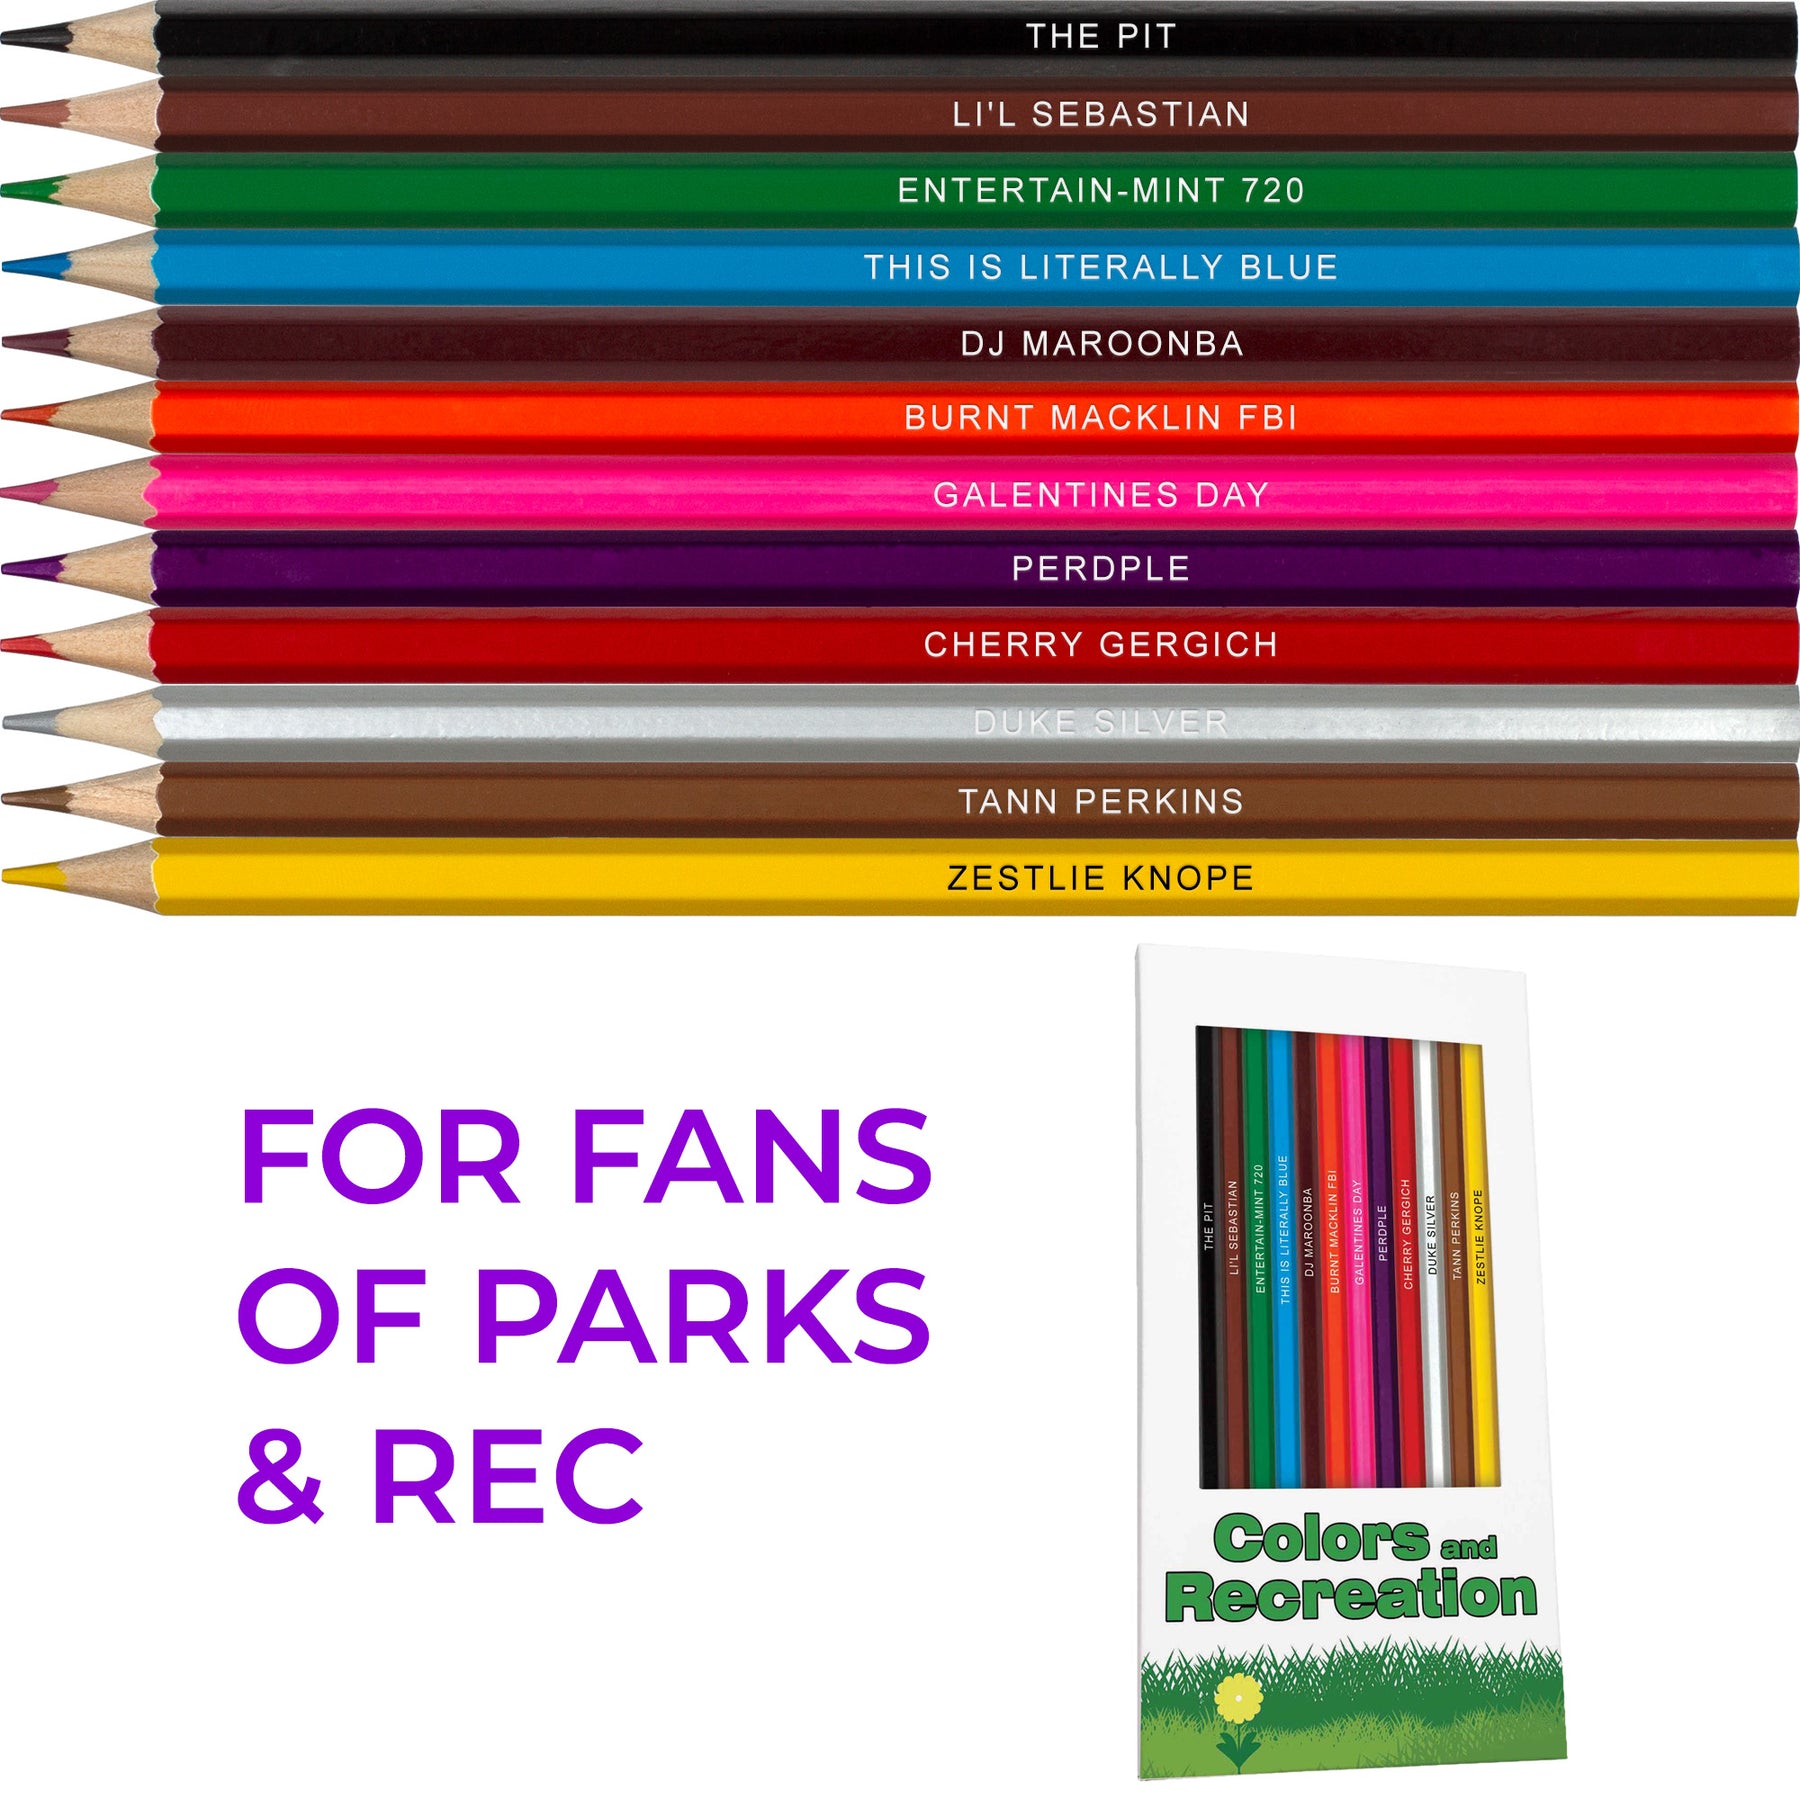 https://popcolors.com/cdn/shop/products/5-colored-pencils-cult-classic-sitcoms-pack_1800x1800.jpg?v=1654011725